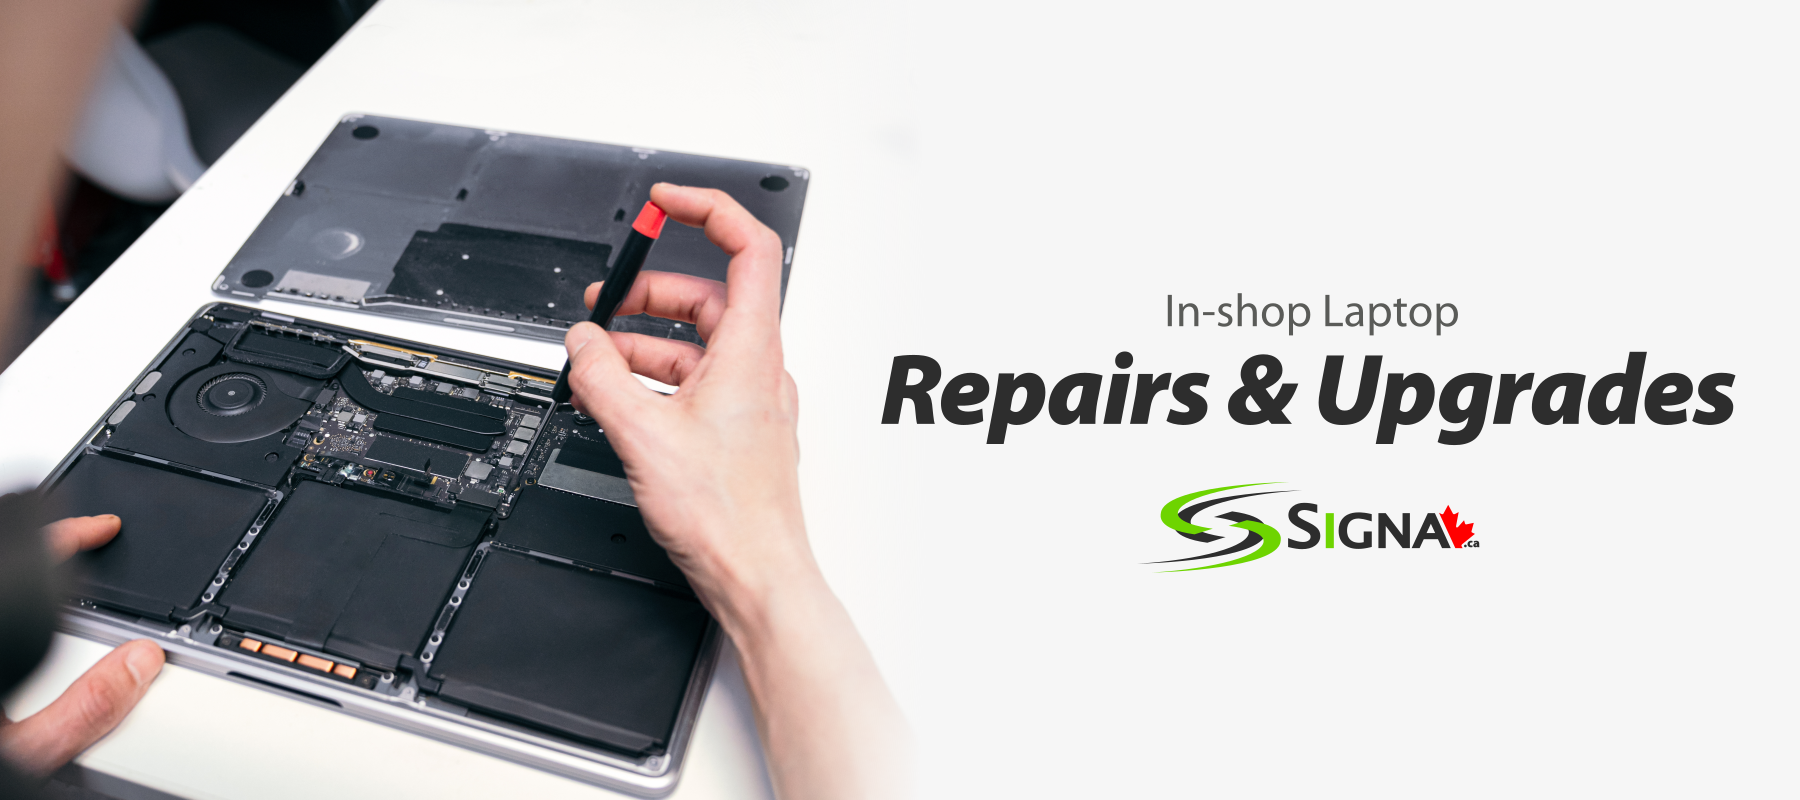 In-shop PC Laptop Repairs Toronto Canada